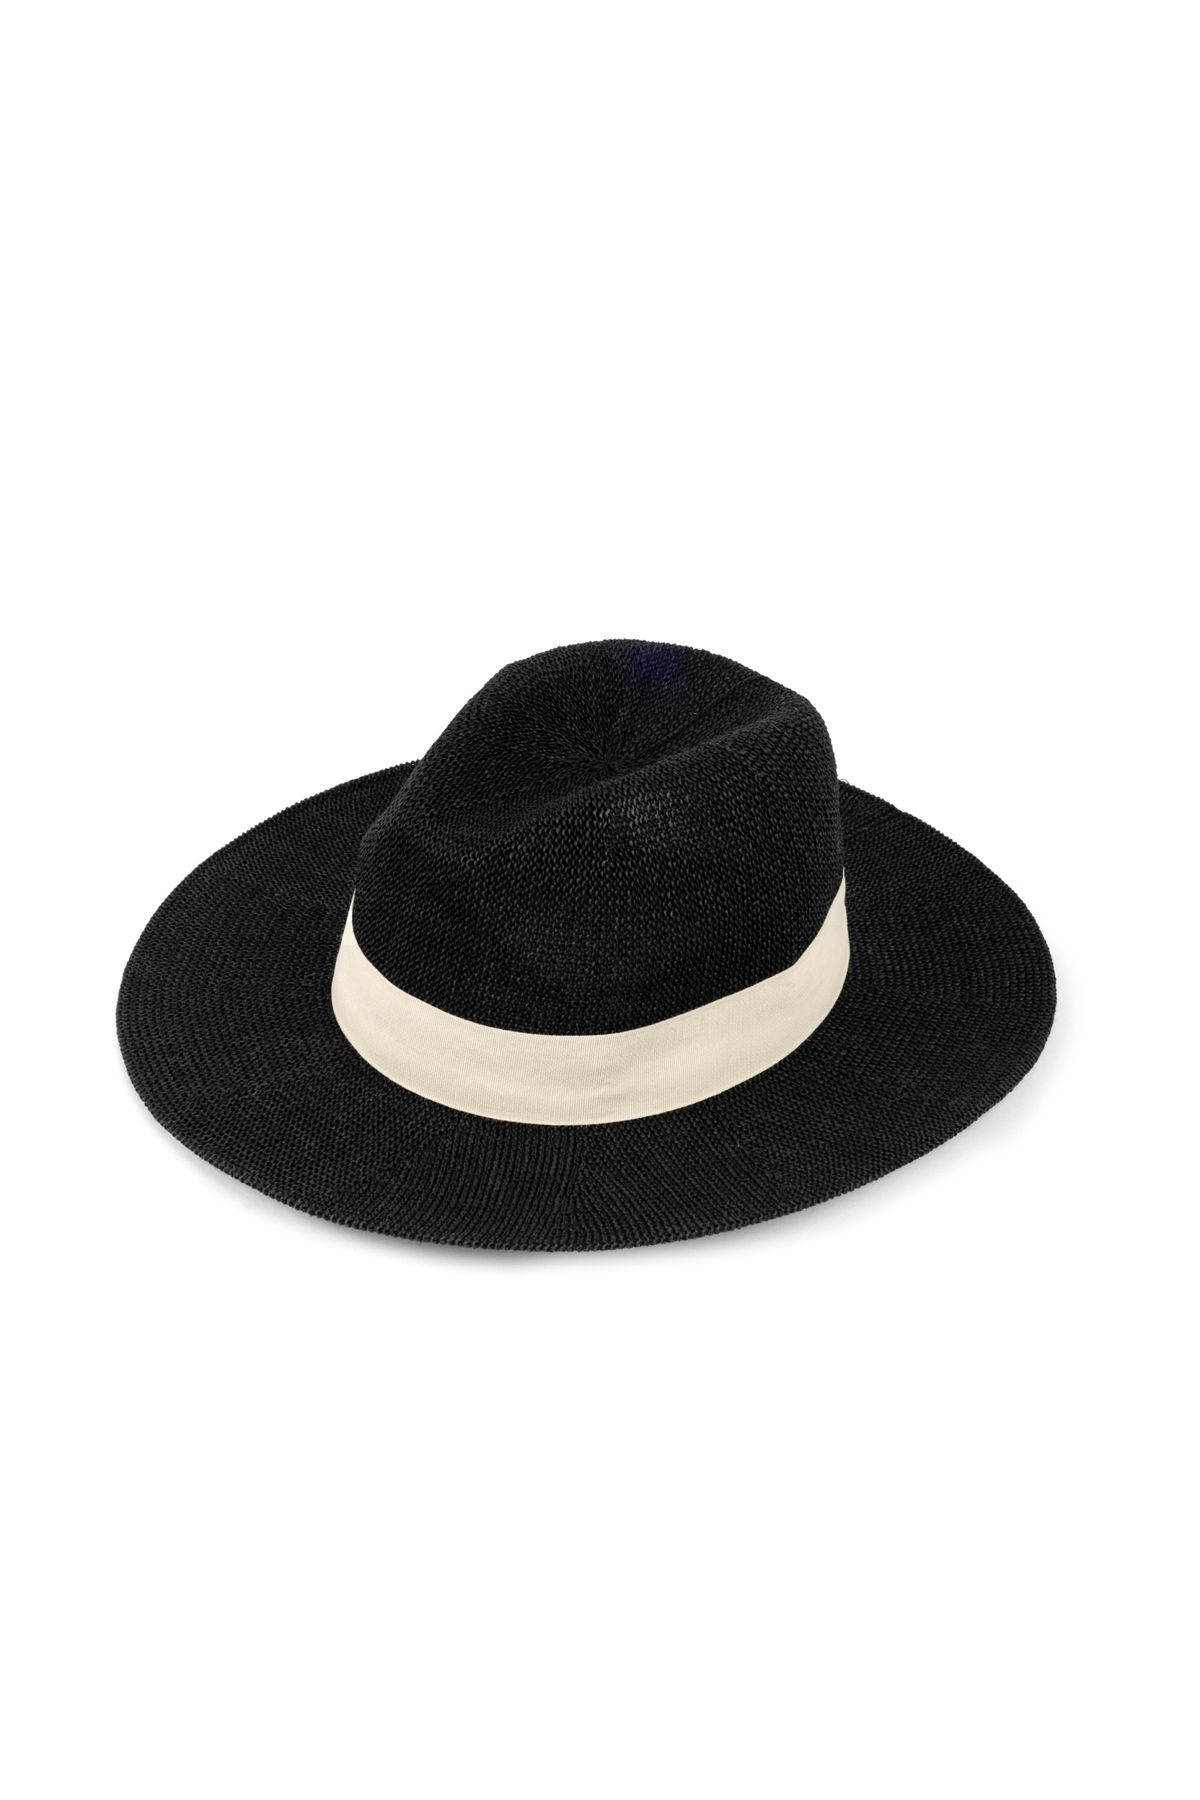 İpekyol Kumaş şeritli hasır şapka